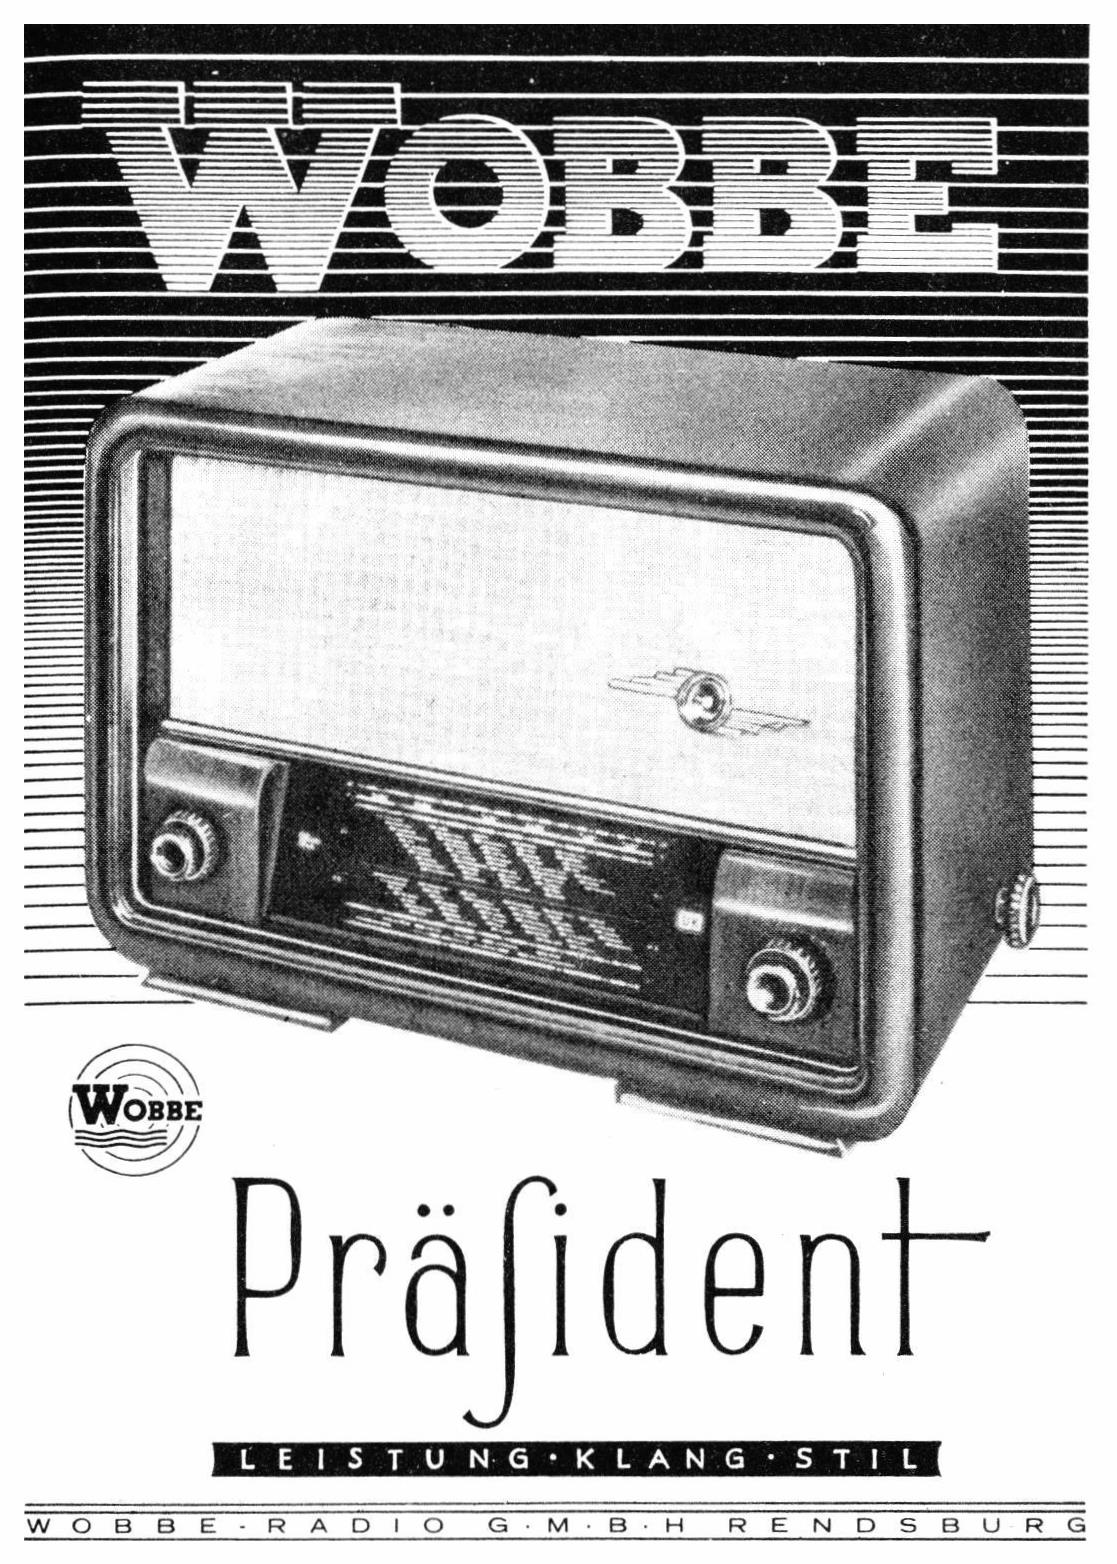 Wobbe 1951 0.jpg